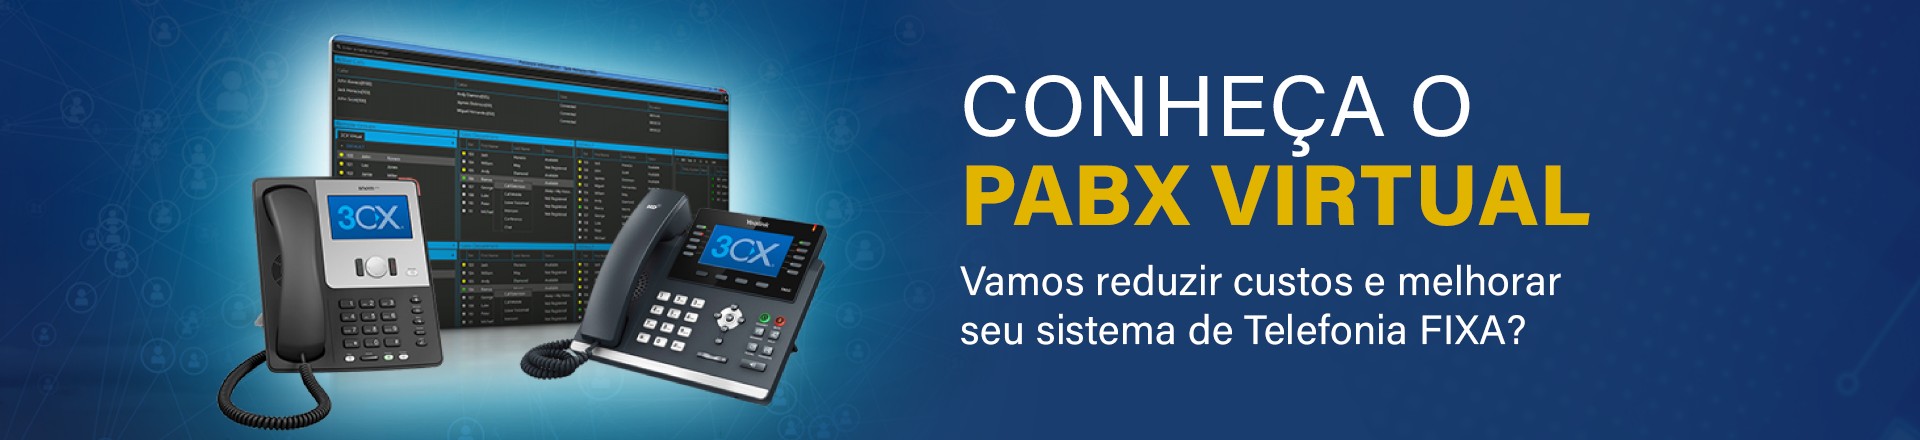 Conheça o Pabx Virtual